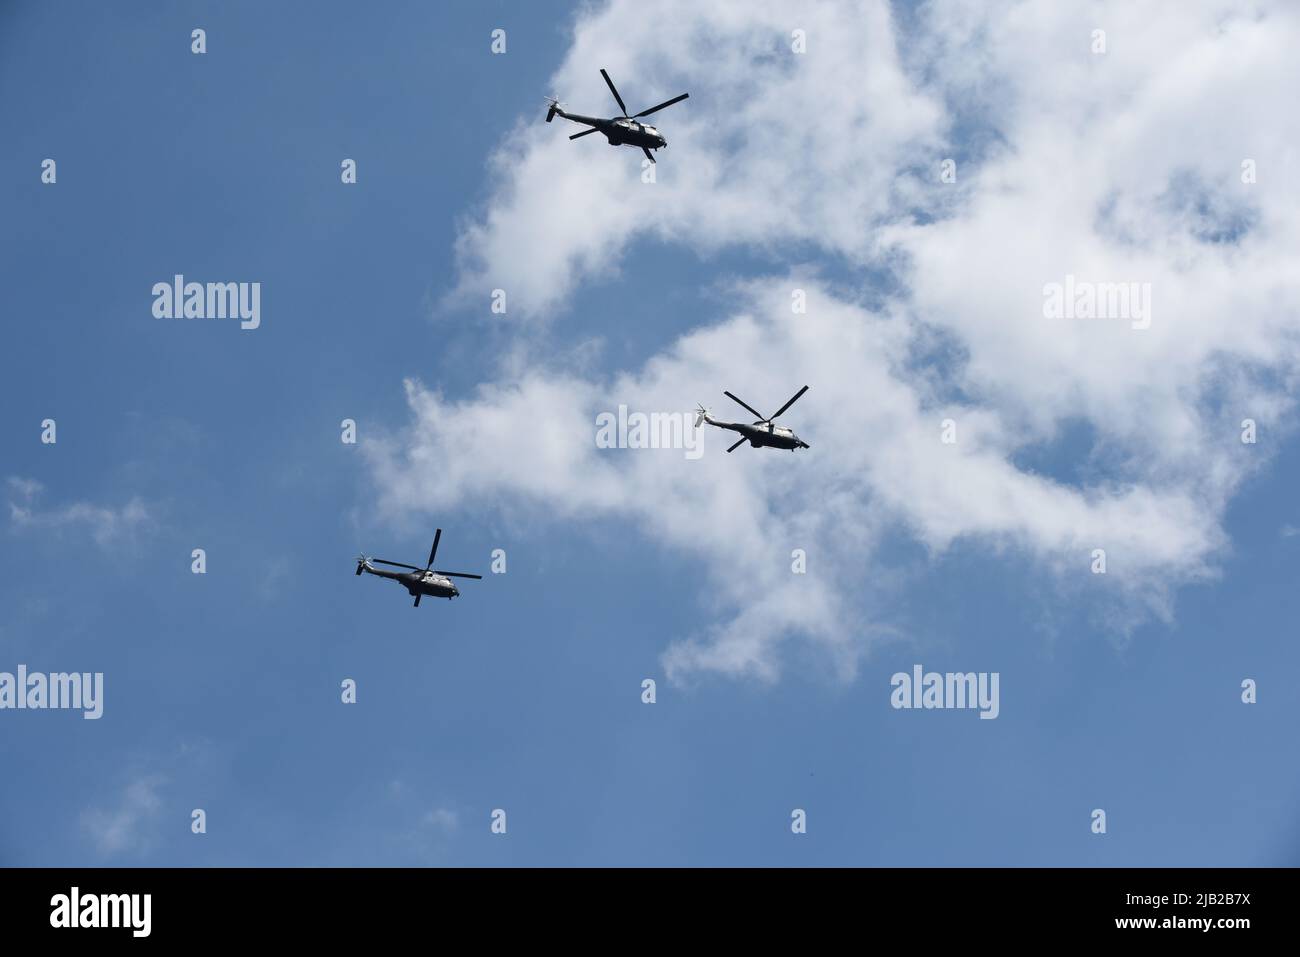 Londres, Angleterre, 2 juin 2022 - des hélicoptères de la Marine royale volent en formation sur la route de la célébration du jubilé de queens survol crédit: Tom Holt/Alay Live News Banque D'Images